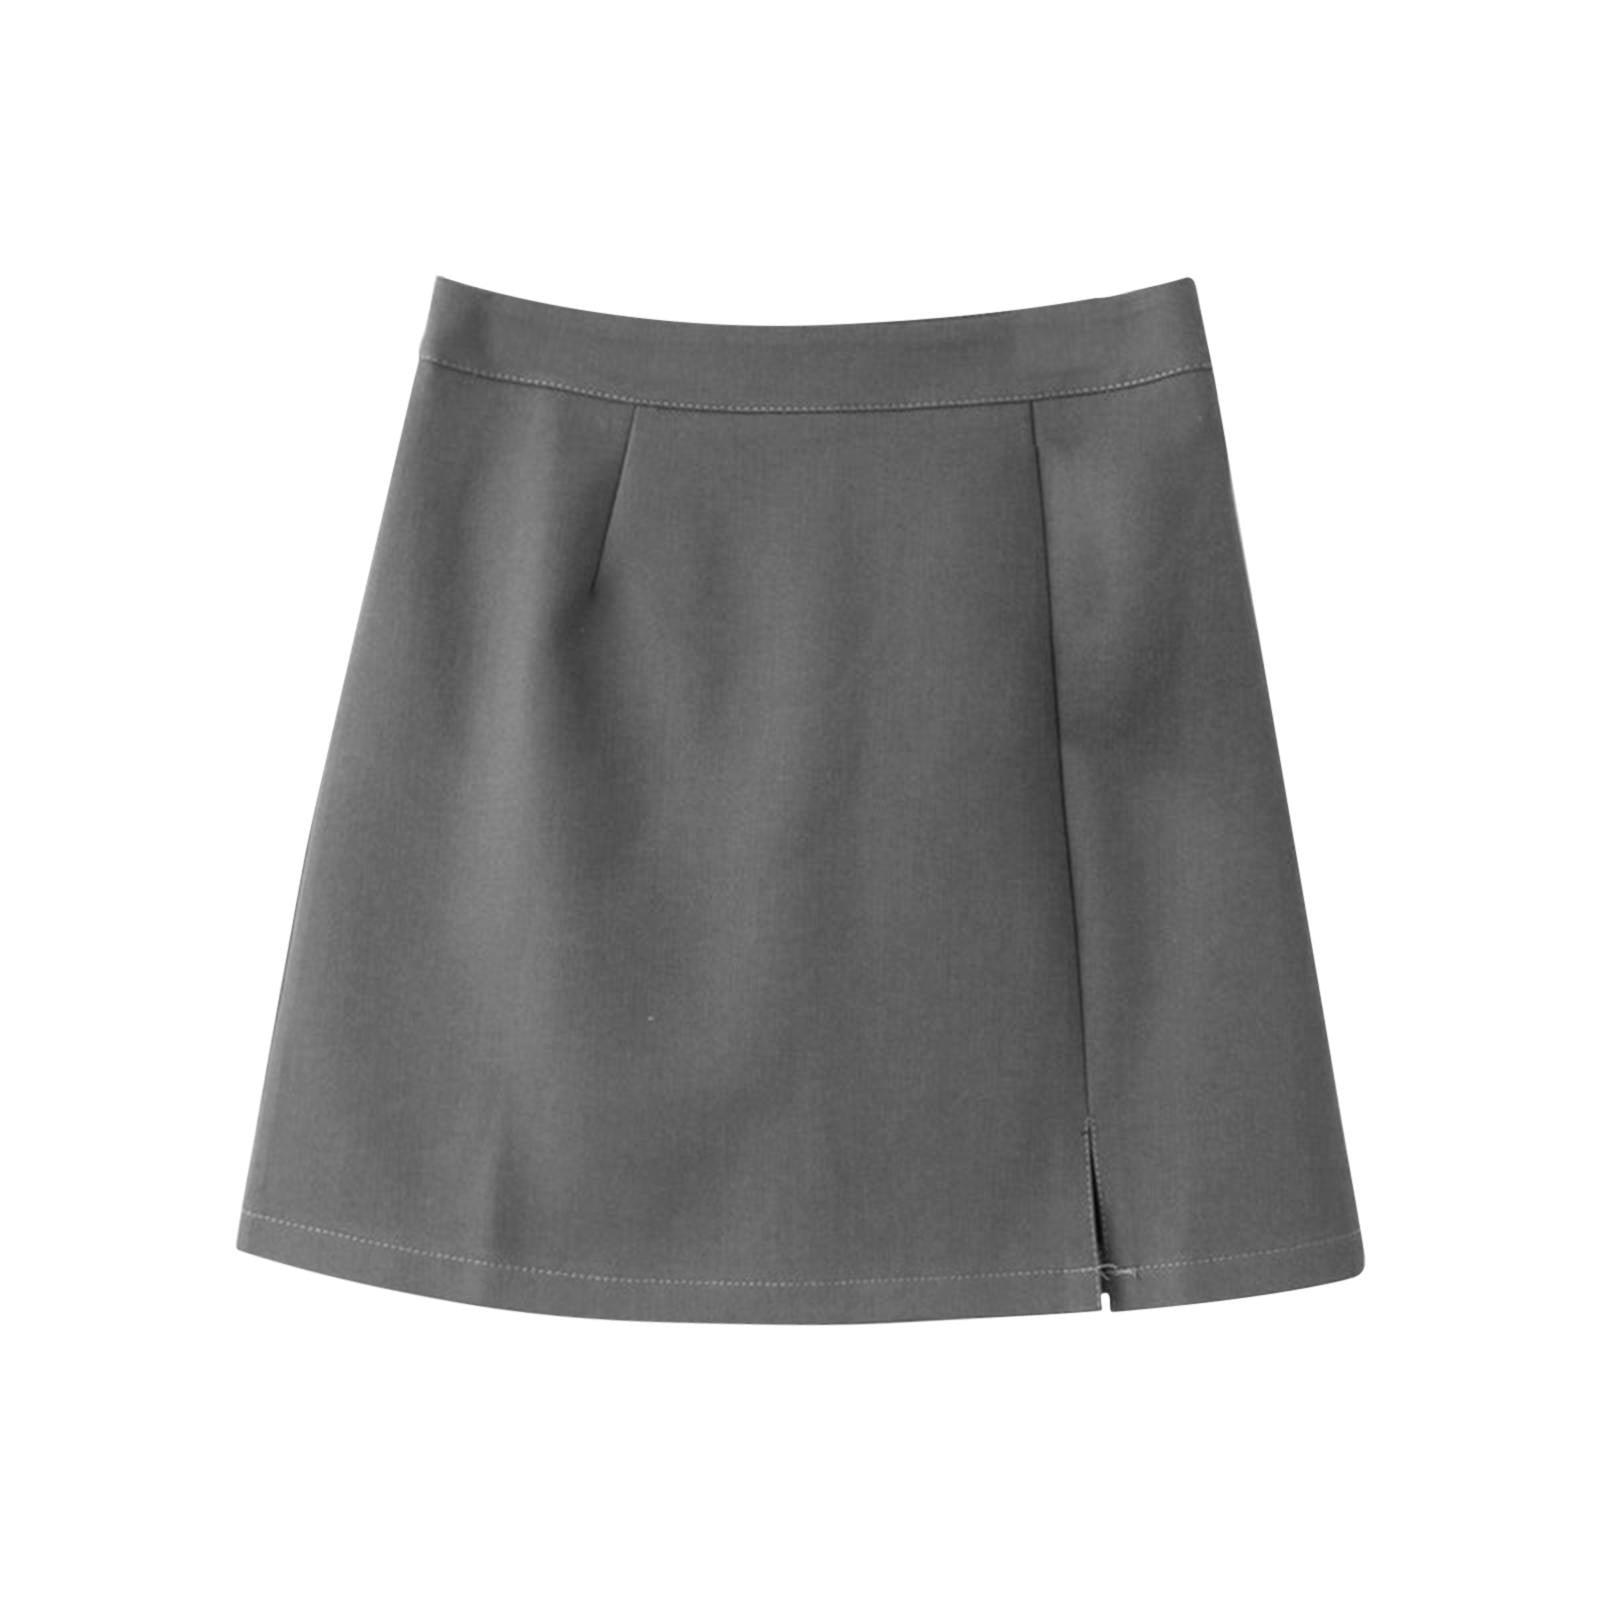 GWAABD Denim Skirts for Women Midi Length Women's A Line Short Skirt ...